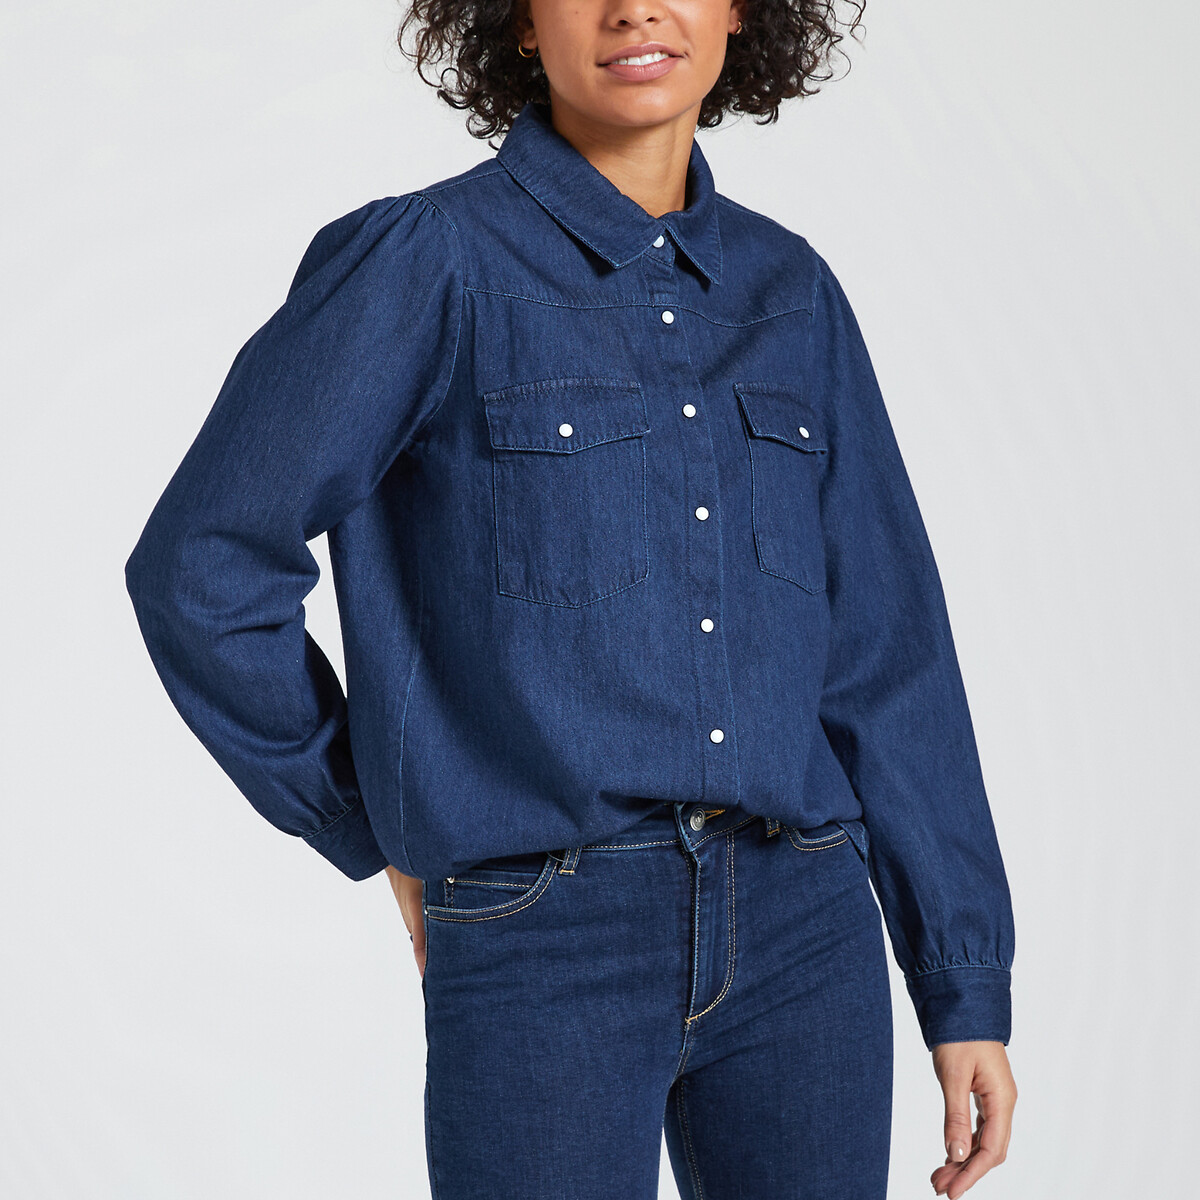 Рубашка из джинсовой ткани с длинными рукавами  XL синий LaRedoute, размер XL - фото 1